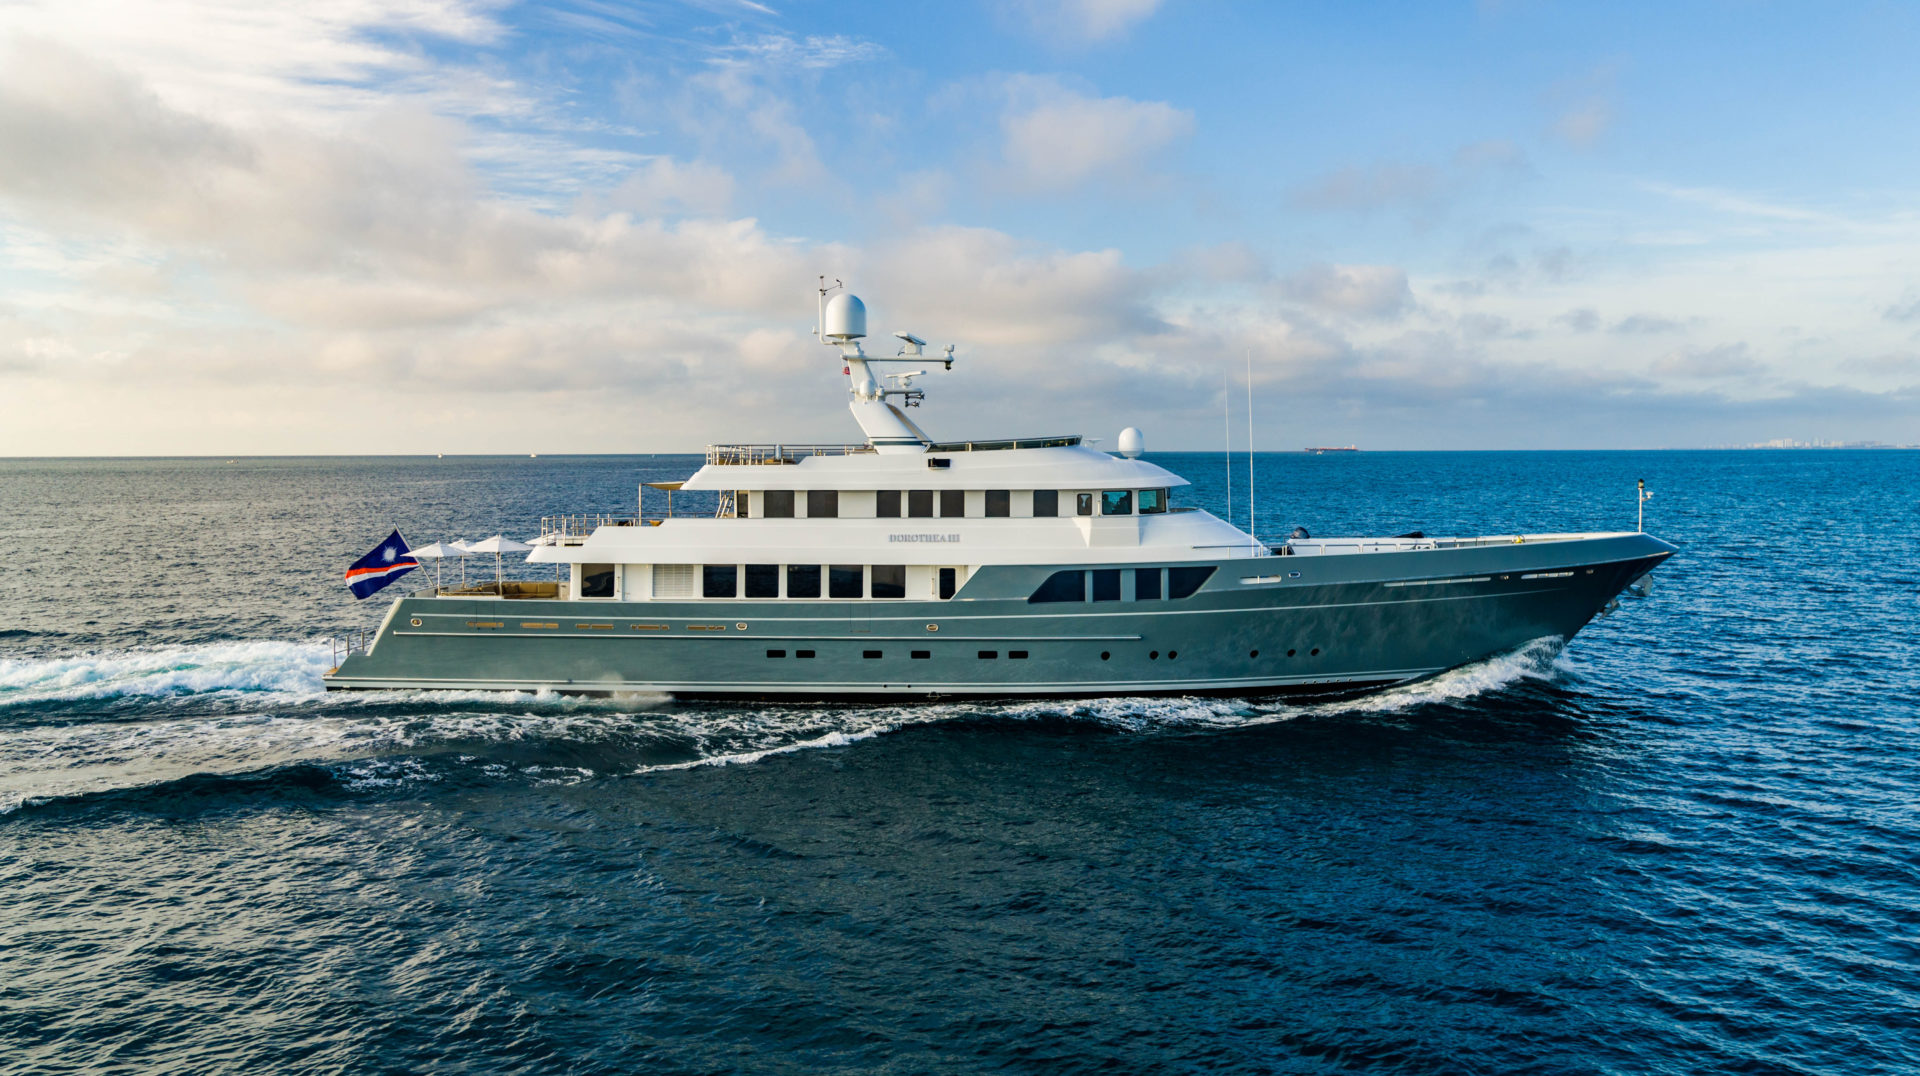 DOROTHEA III yacht Charter Brochure